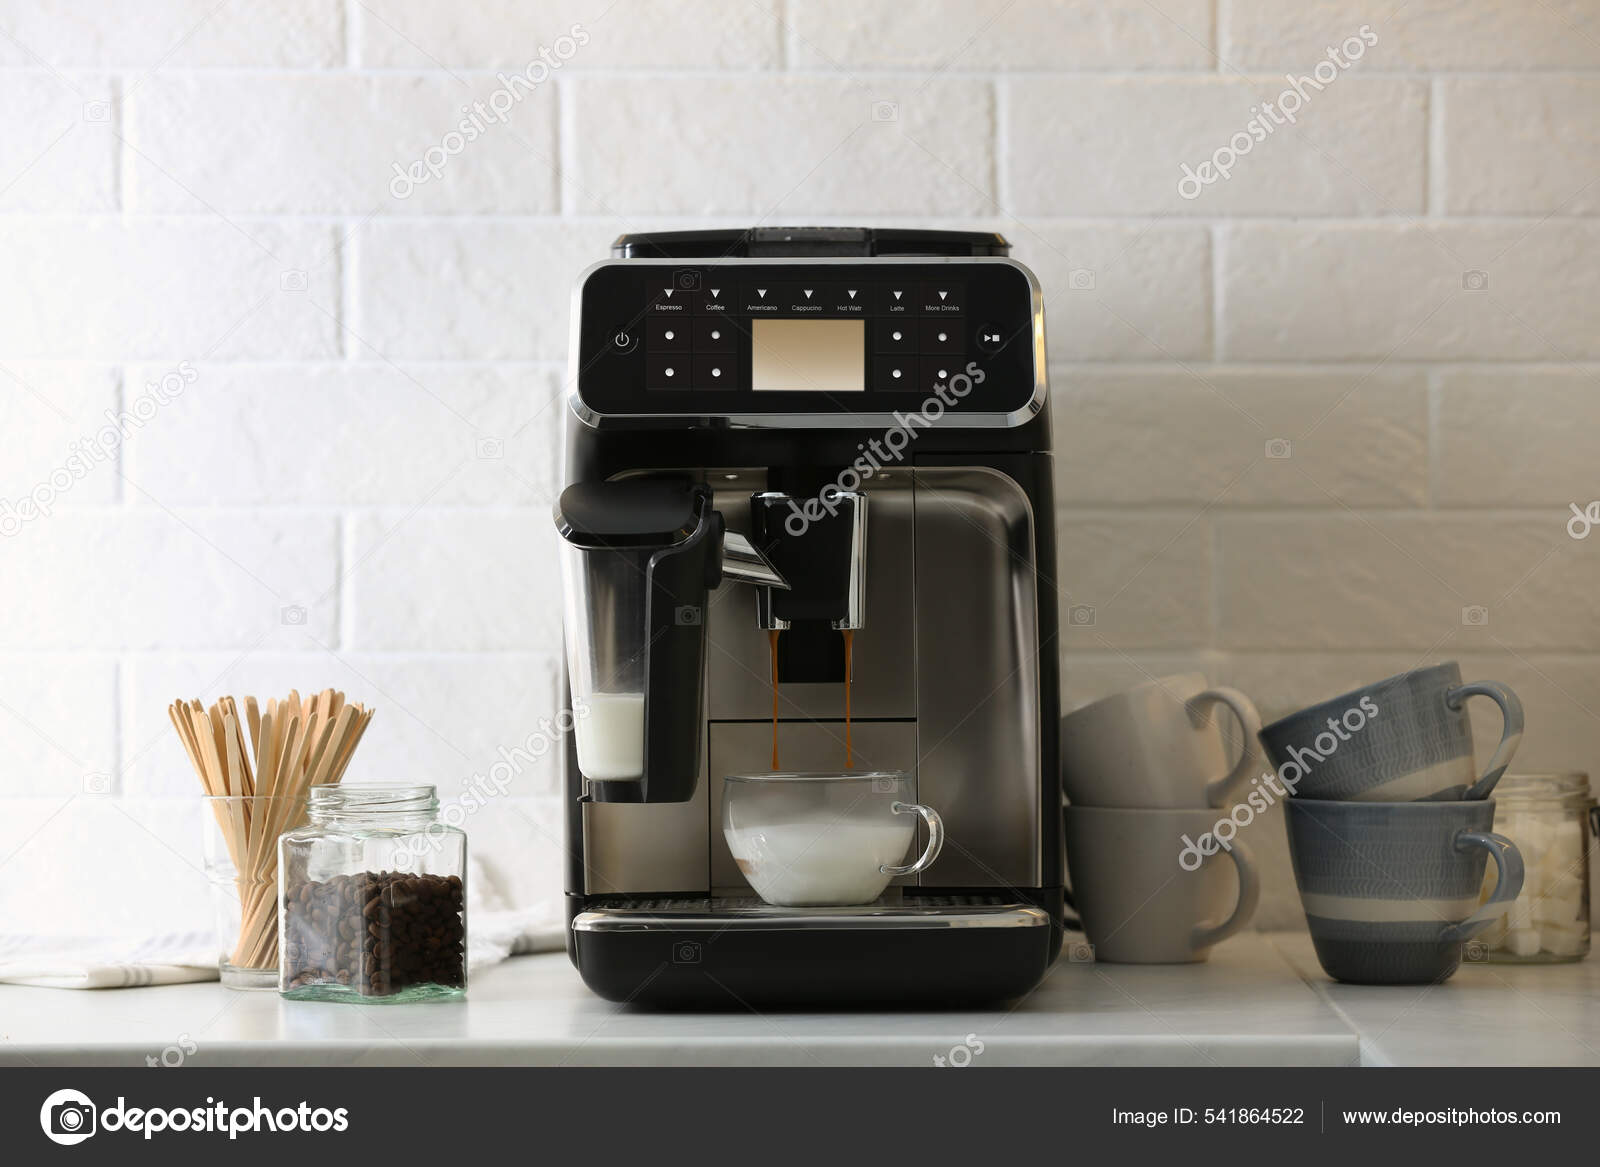 https://st.depositphotos.com/16122460/54186/i/1600/depositphotos_541864522-stock-photo-modern-espresso-machine-pouring-coffee.jpg